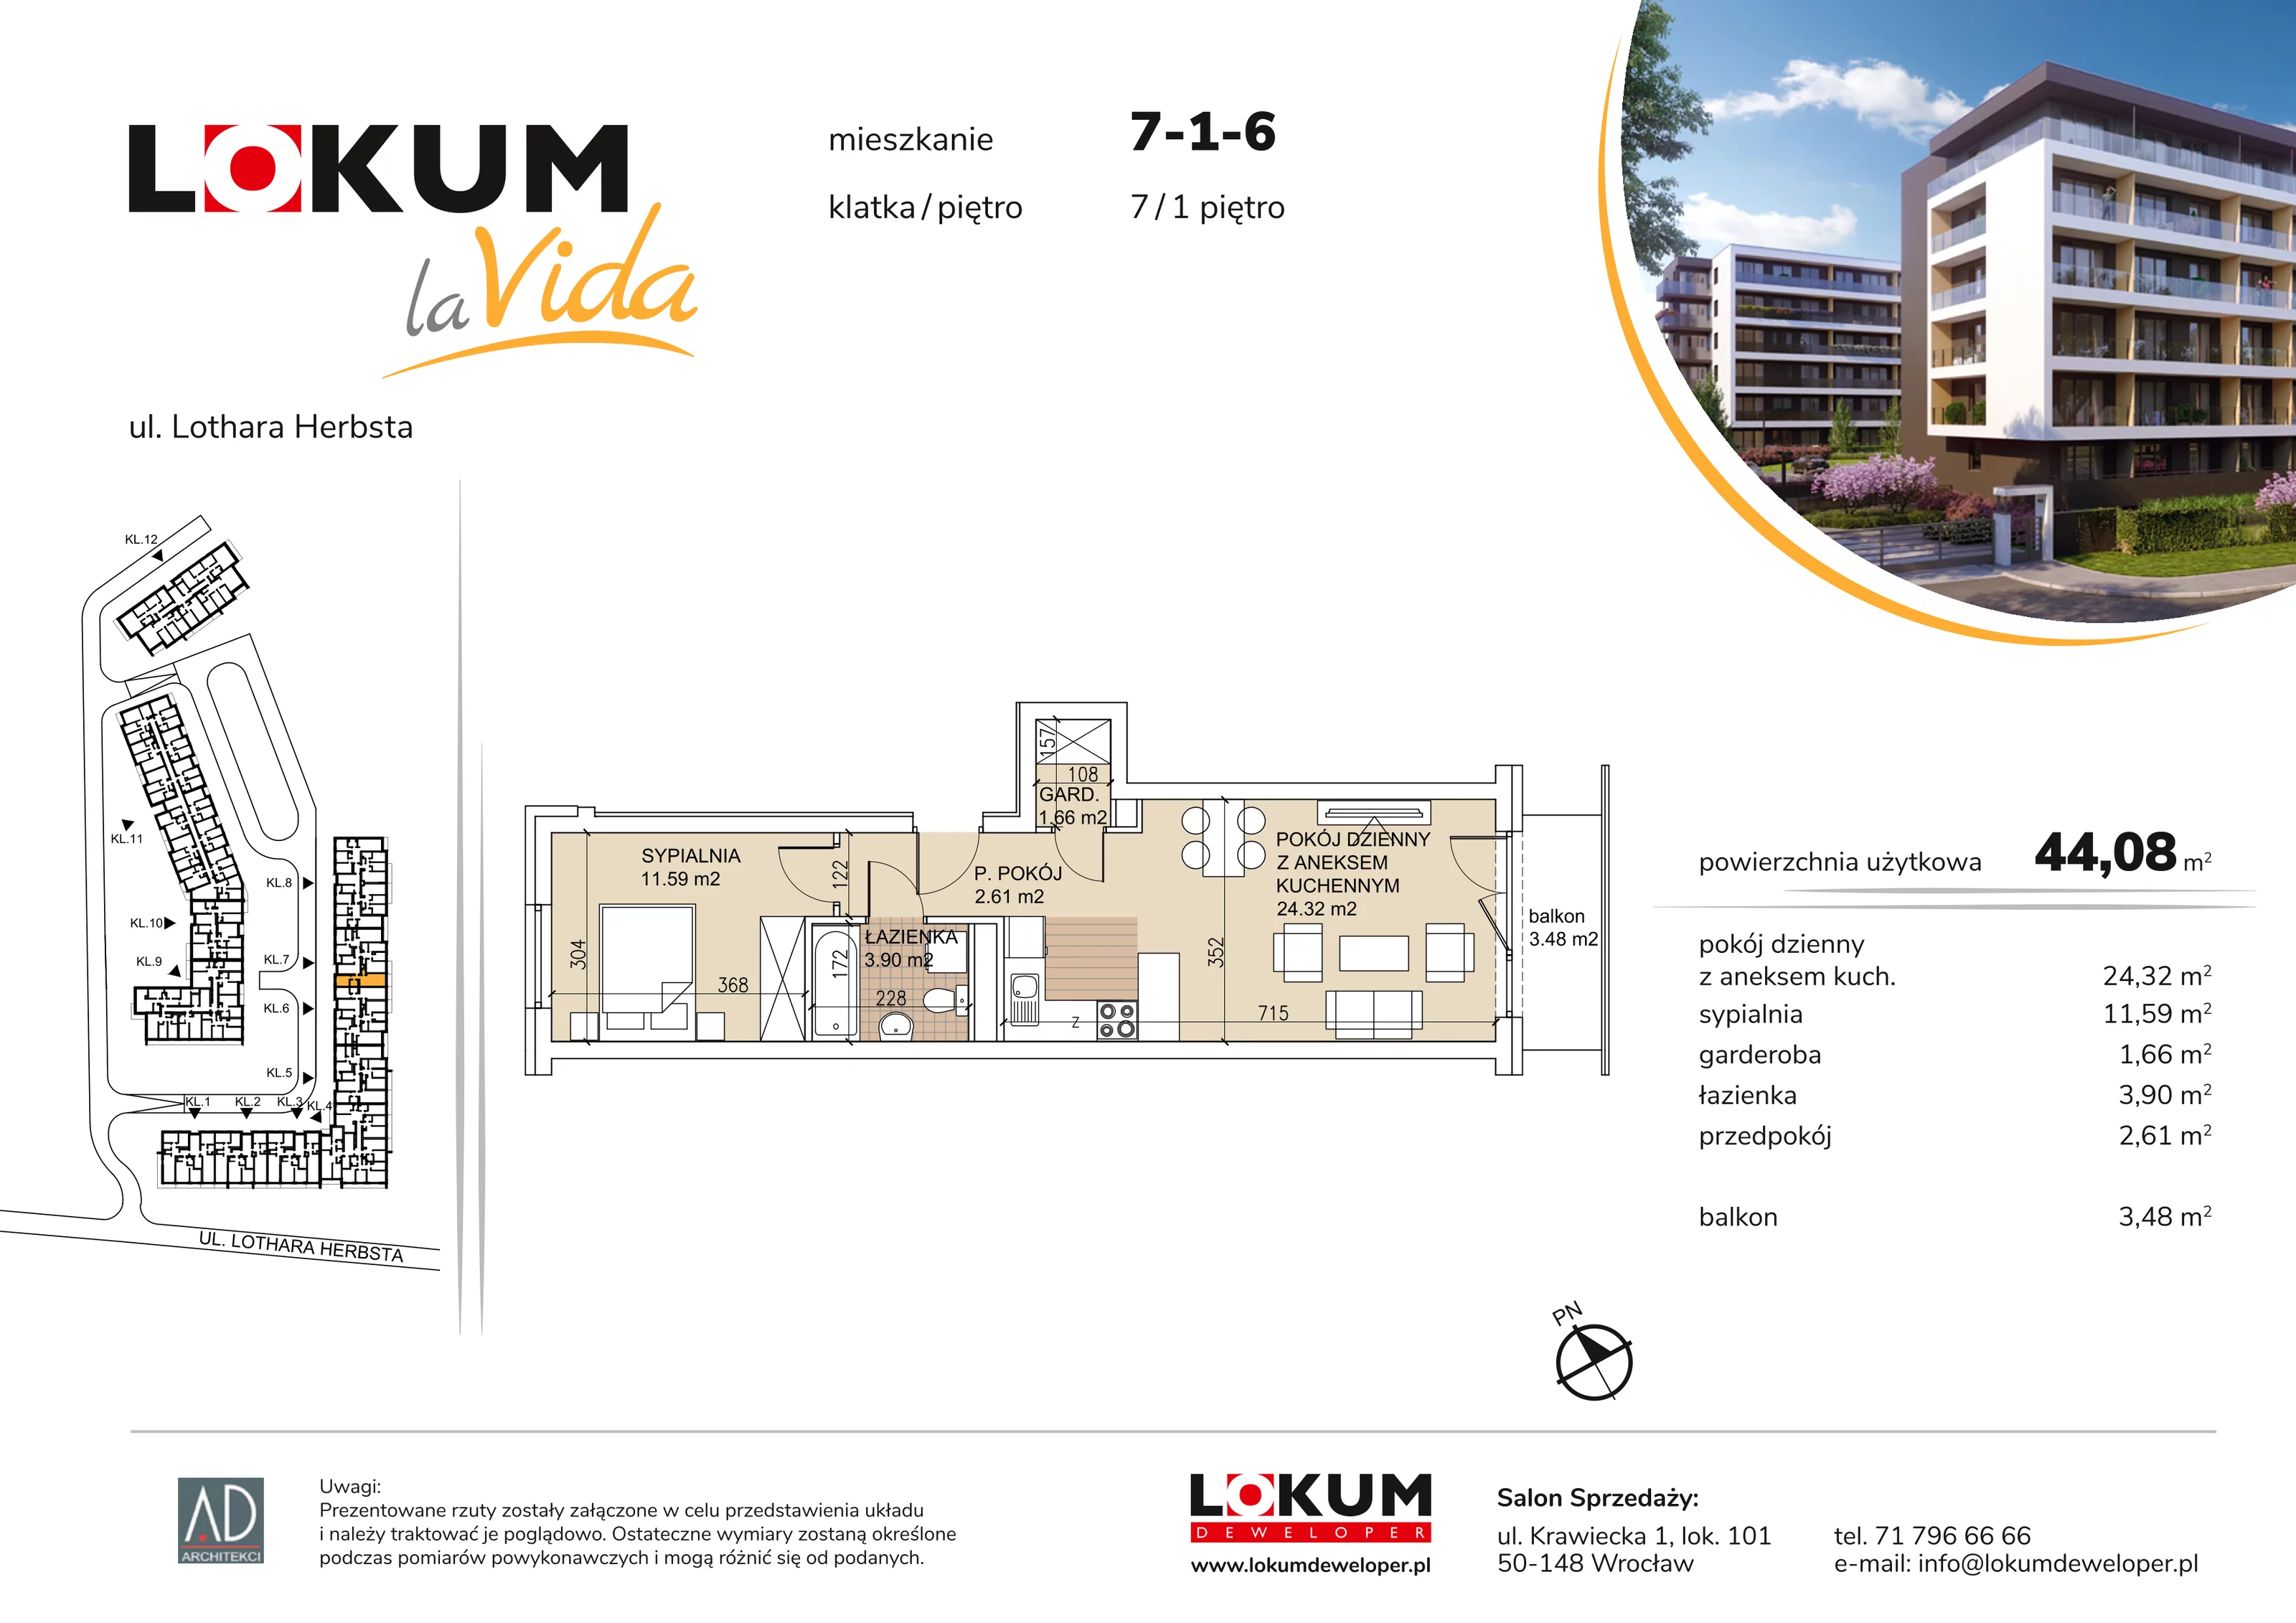 Mieszkanie 44,08 m², piętro 1, oferta nr 7-1-6, Lokum la Vida, Wrocław, Sołtysowice, ul. Lothara Herbsta